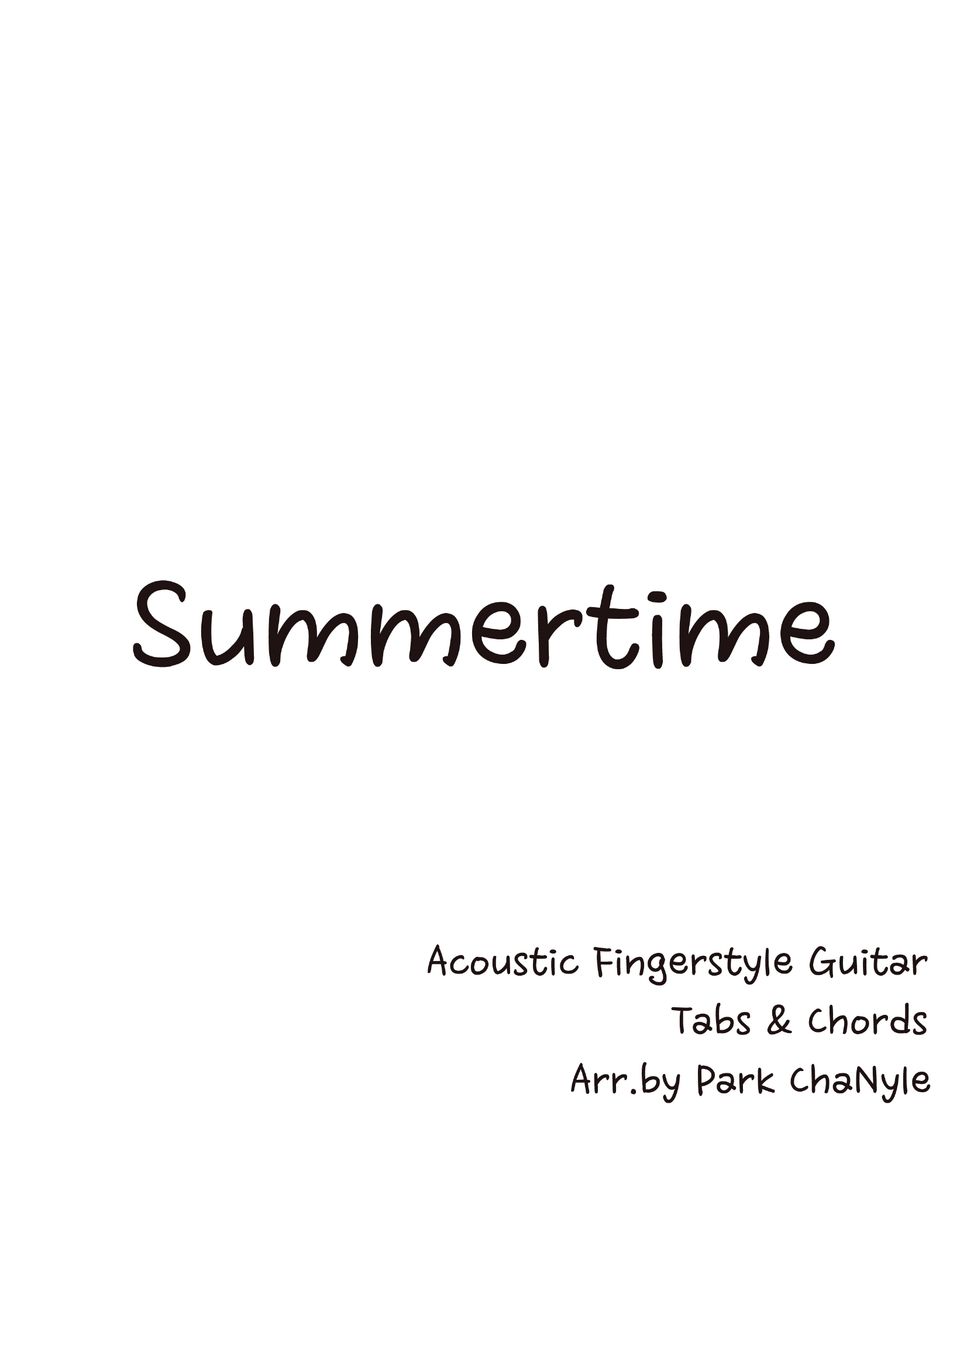 guitar chords for summertime